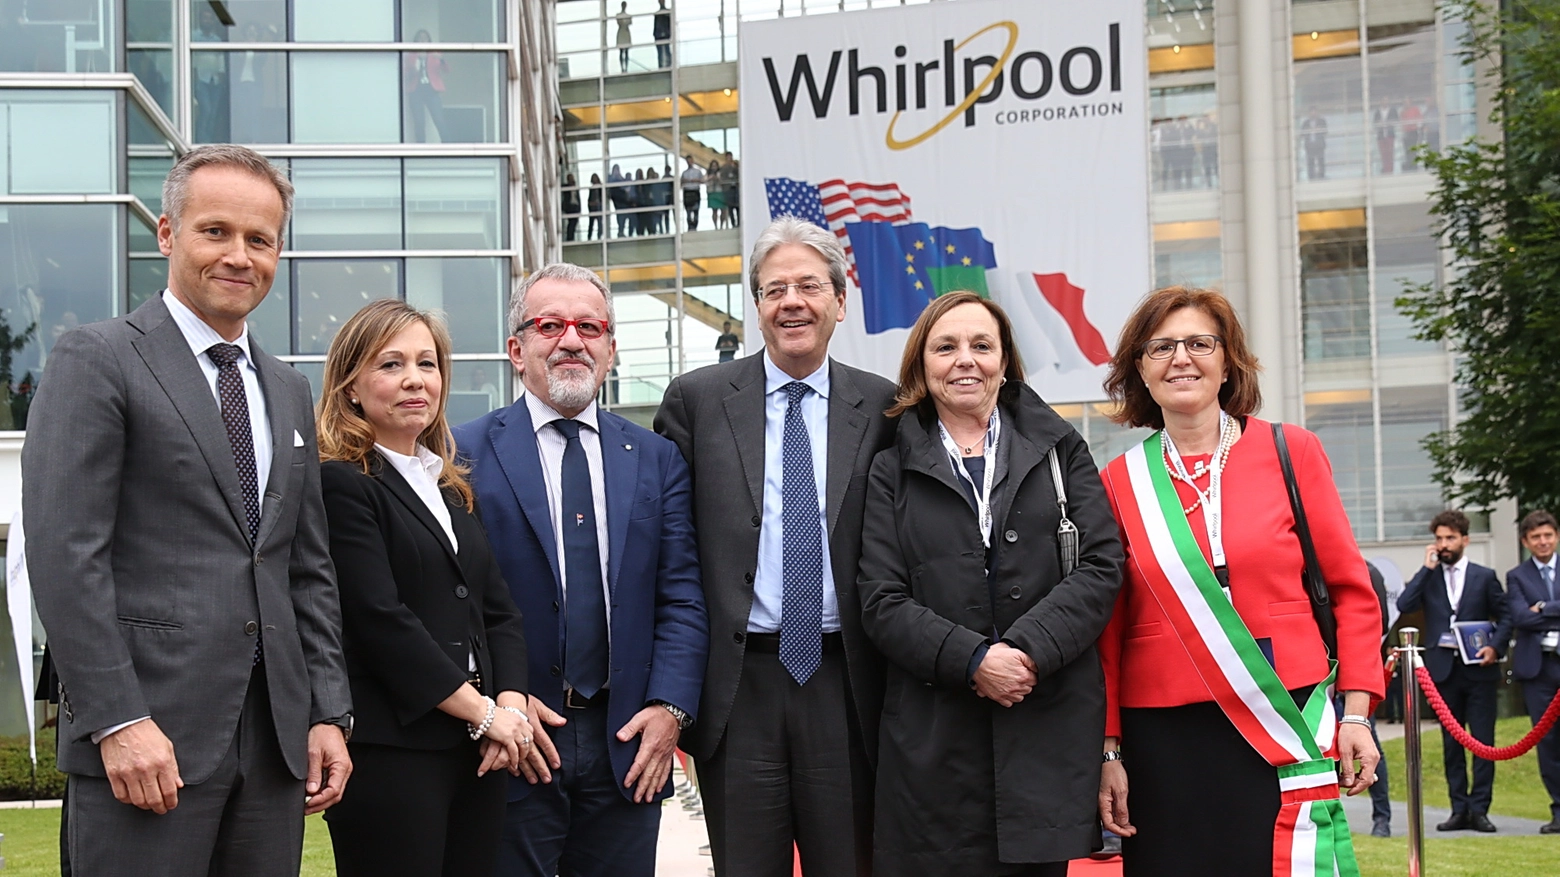 Le autorità all'inaugurazione del nuovo quartier generale Whirlpool